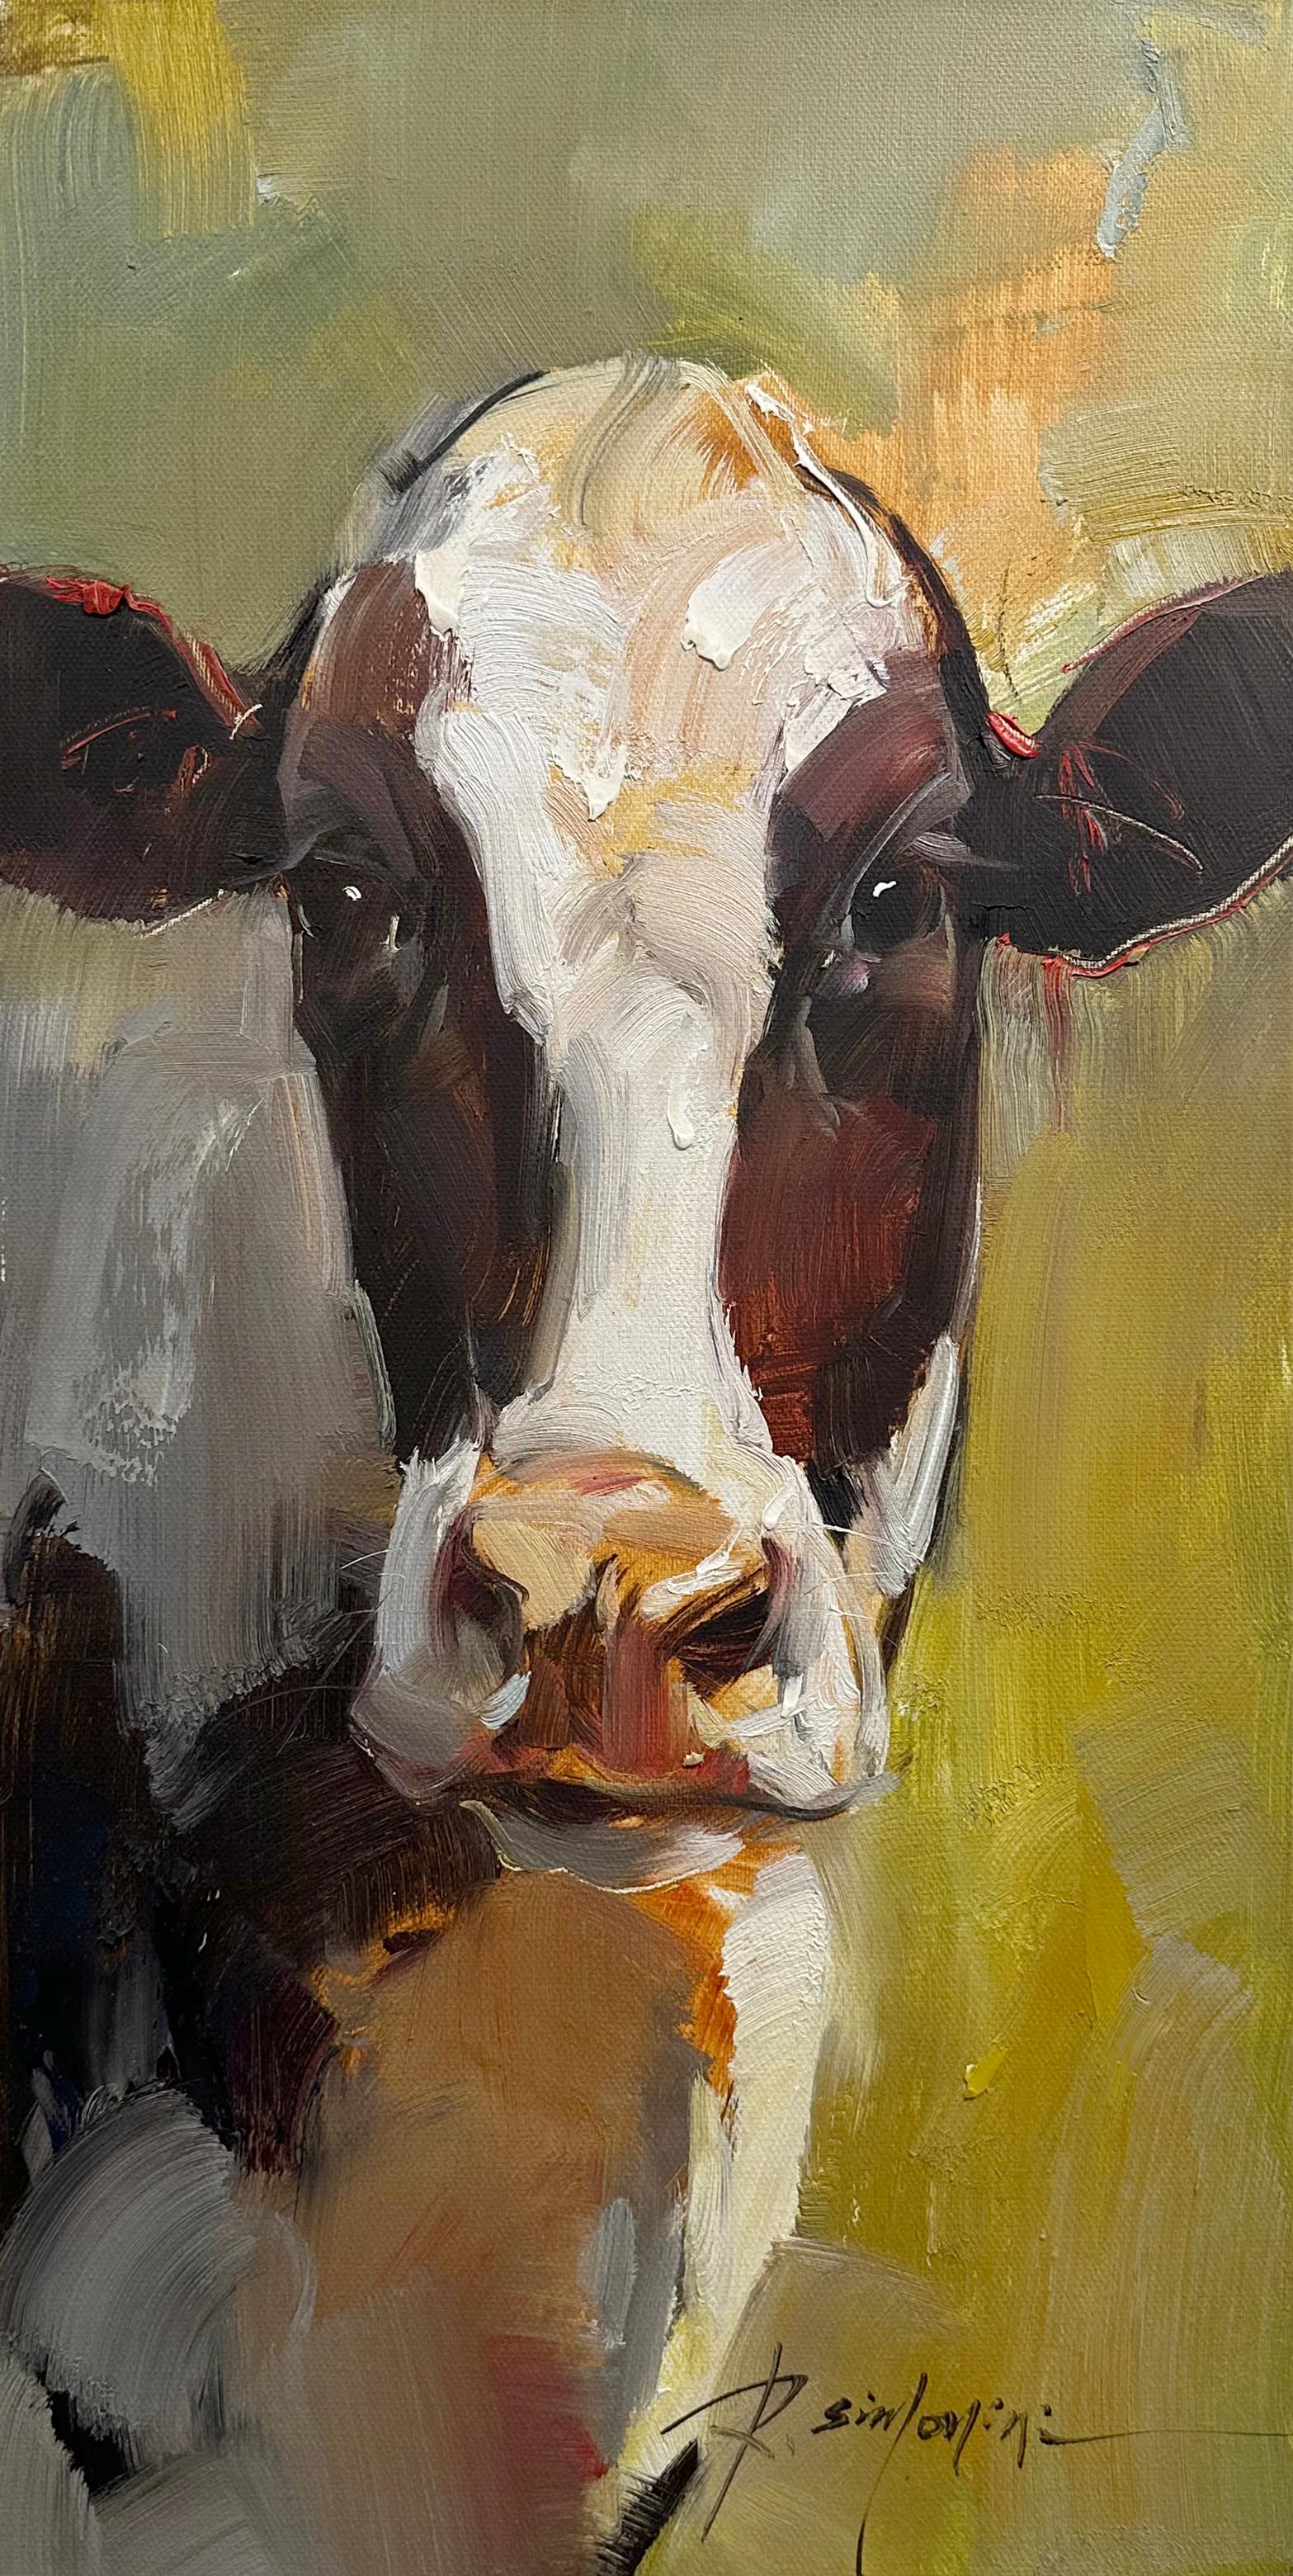 Cette peinture de l'artiste Ray SIMONINI intitulée "Sandy" est une peinture à l'huile sur toile 24x12 représentant un portrait d'une vache brune et blanche posant dans un pâturage verdoyant. 

A propos de l'artiste :
SIMONINI est né en Chine en